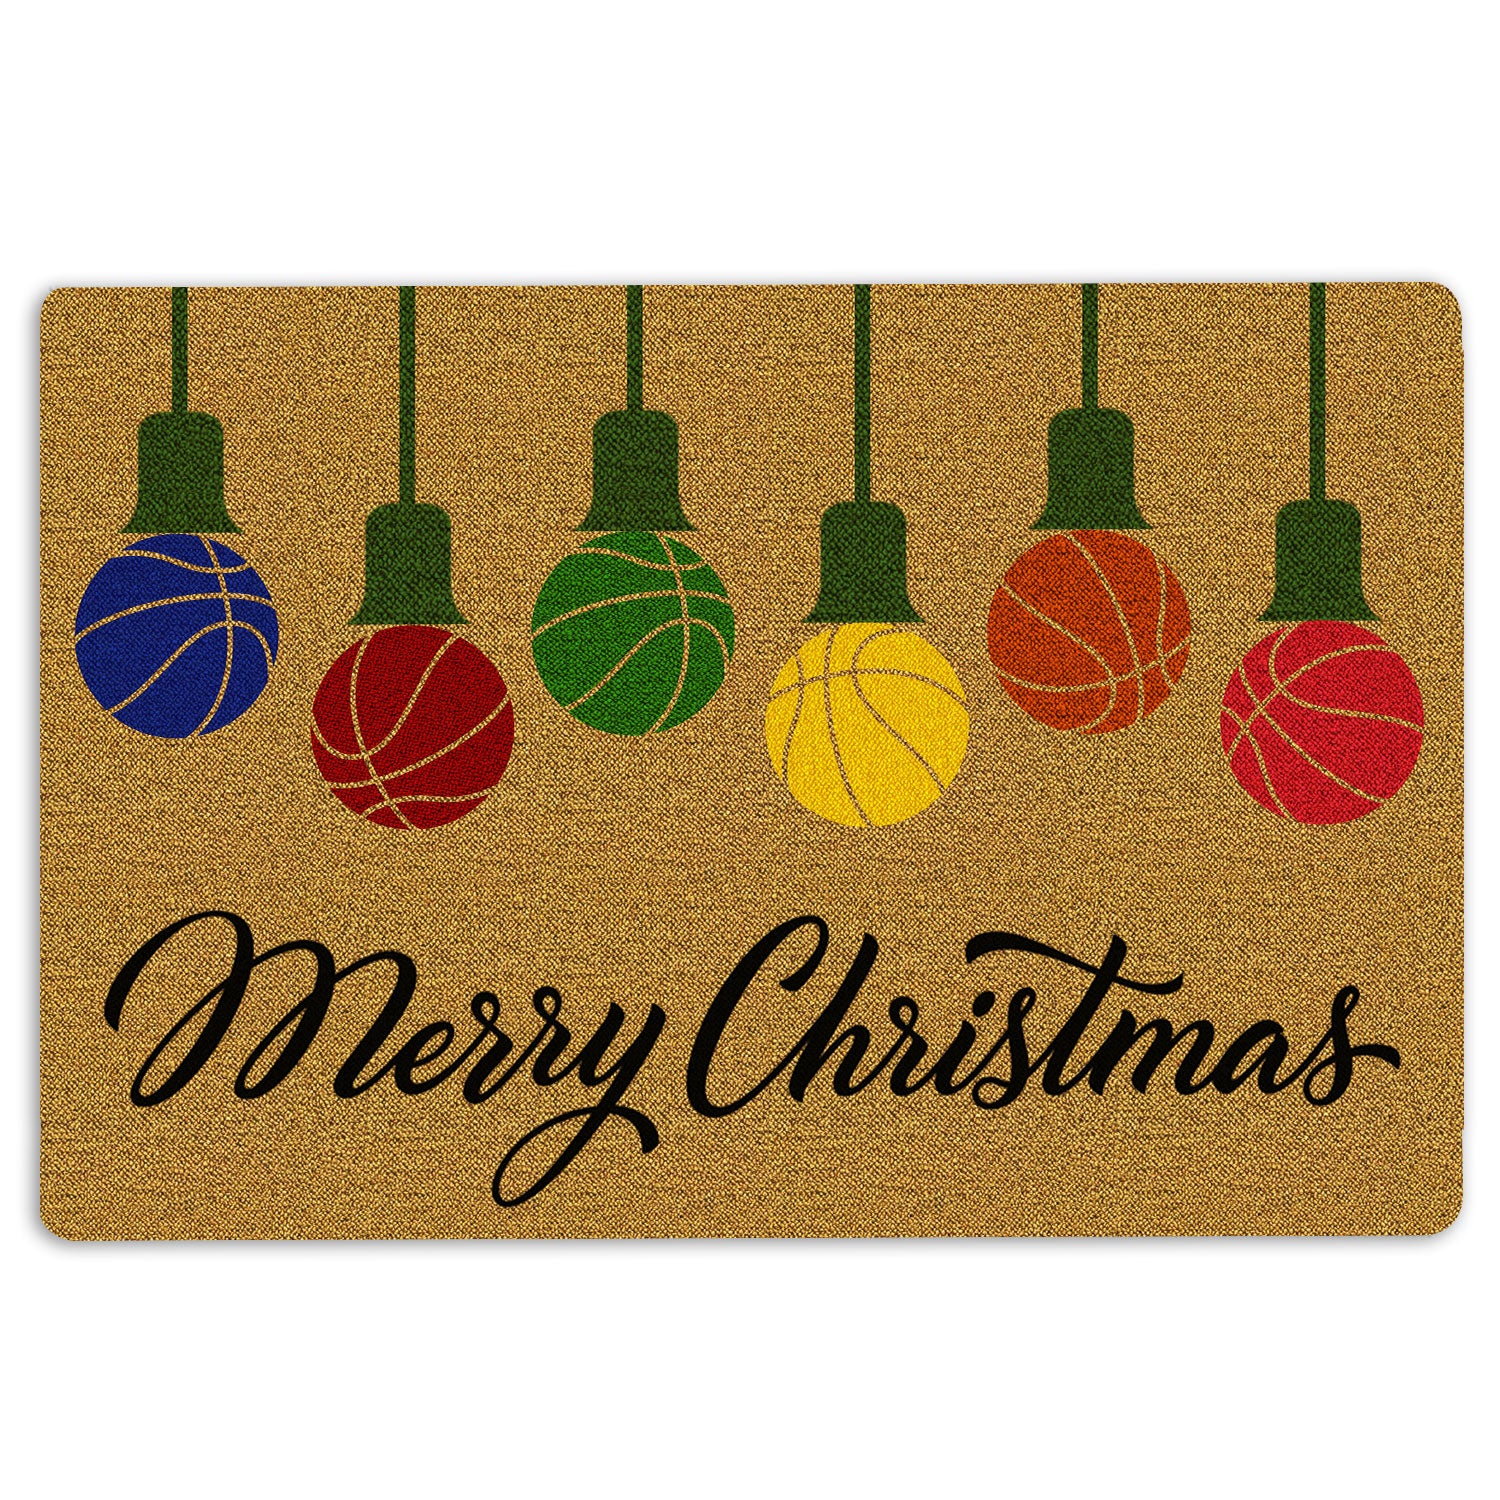 Ohaprints-Doormat-Outdoor-Indoor-Merry-Christmas-Basketball-String-Light-Xmas-Winter-Rubber-Door-Mat-7-18'' x 30''